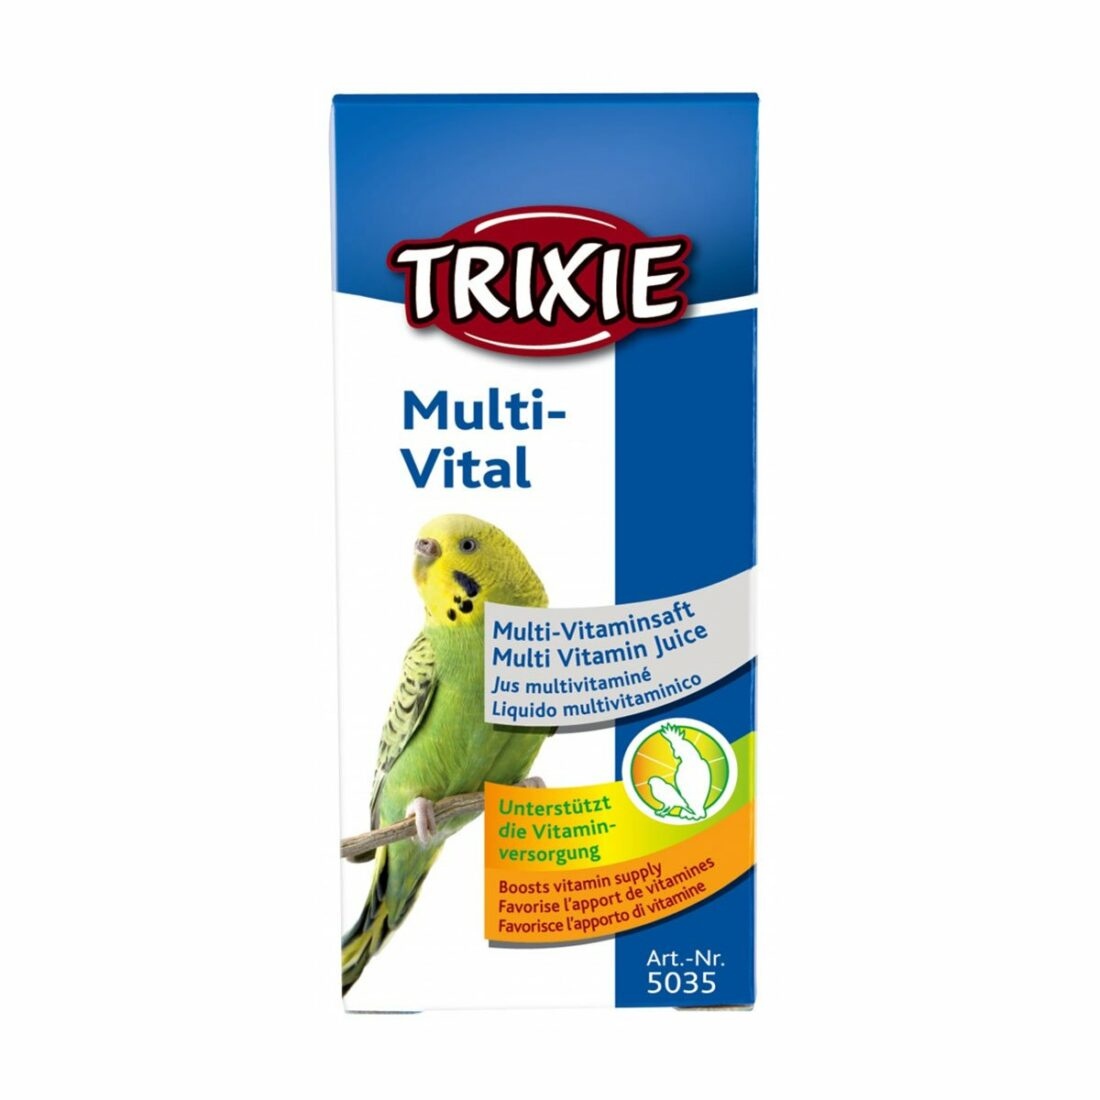 Trixie multi vital pro